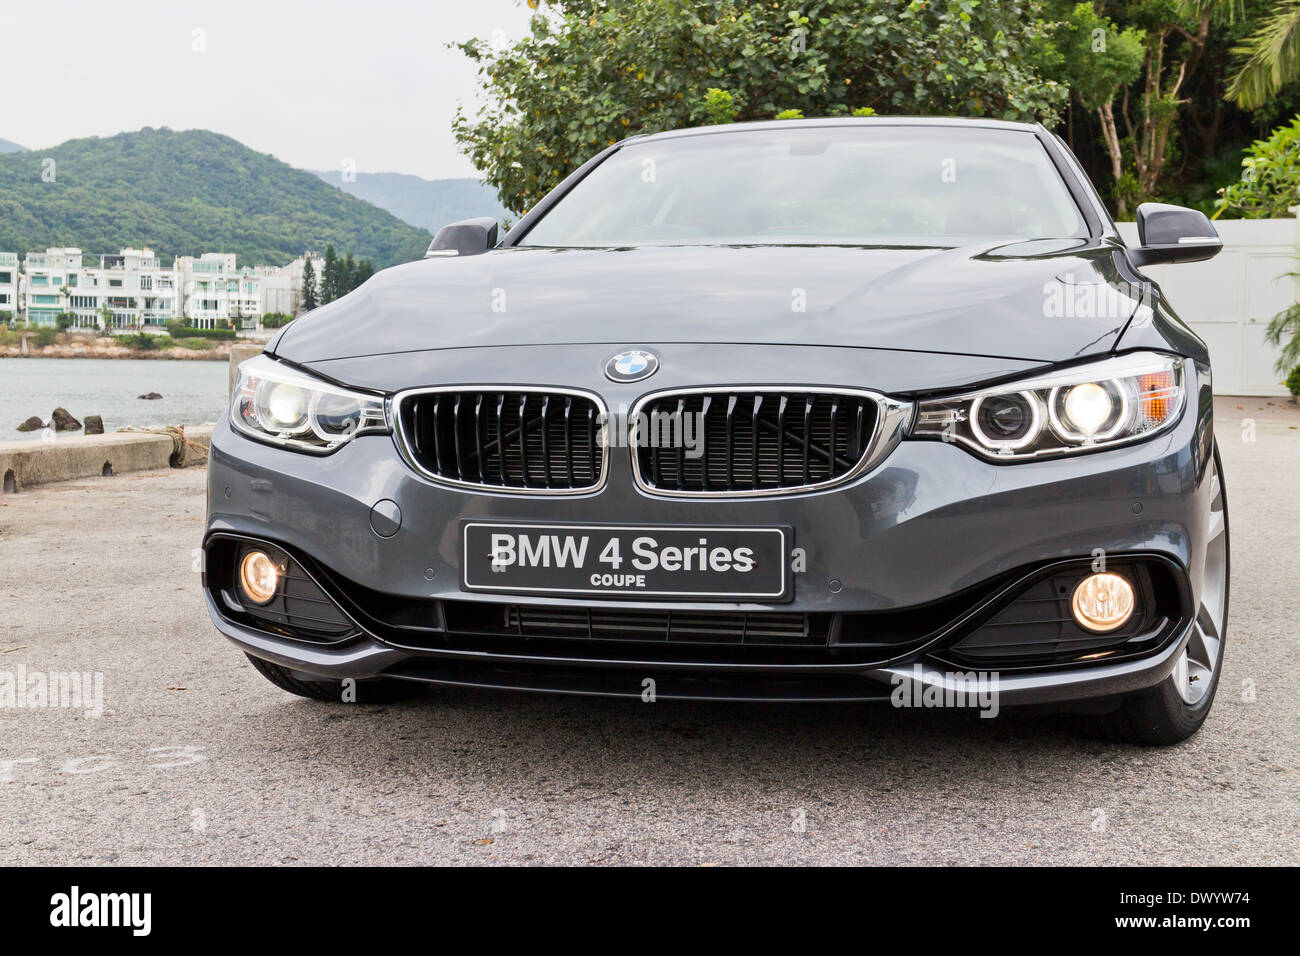 BMW 4-Series Coupé modèle 2013, la plus nouvelle série de BMW. Banque D'Images